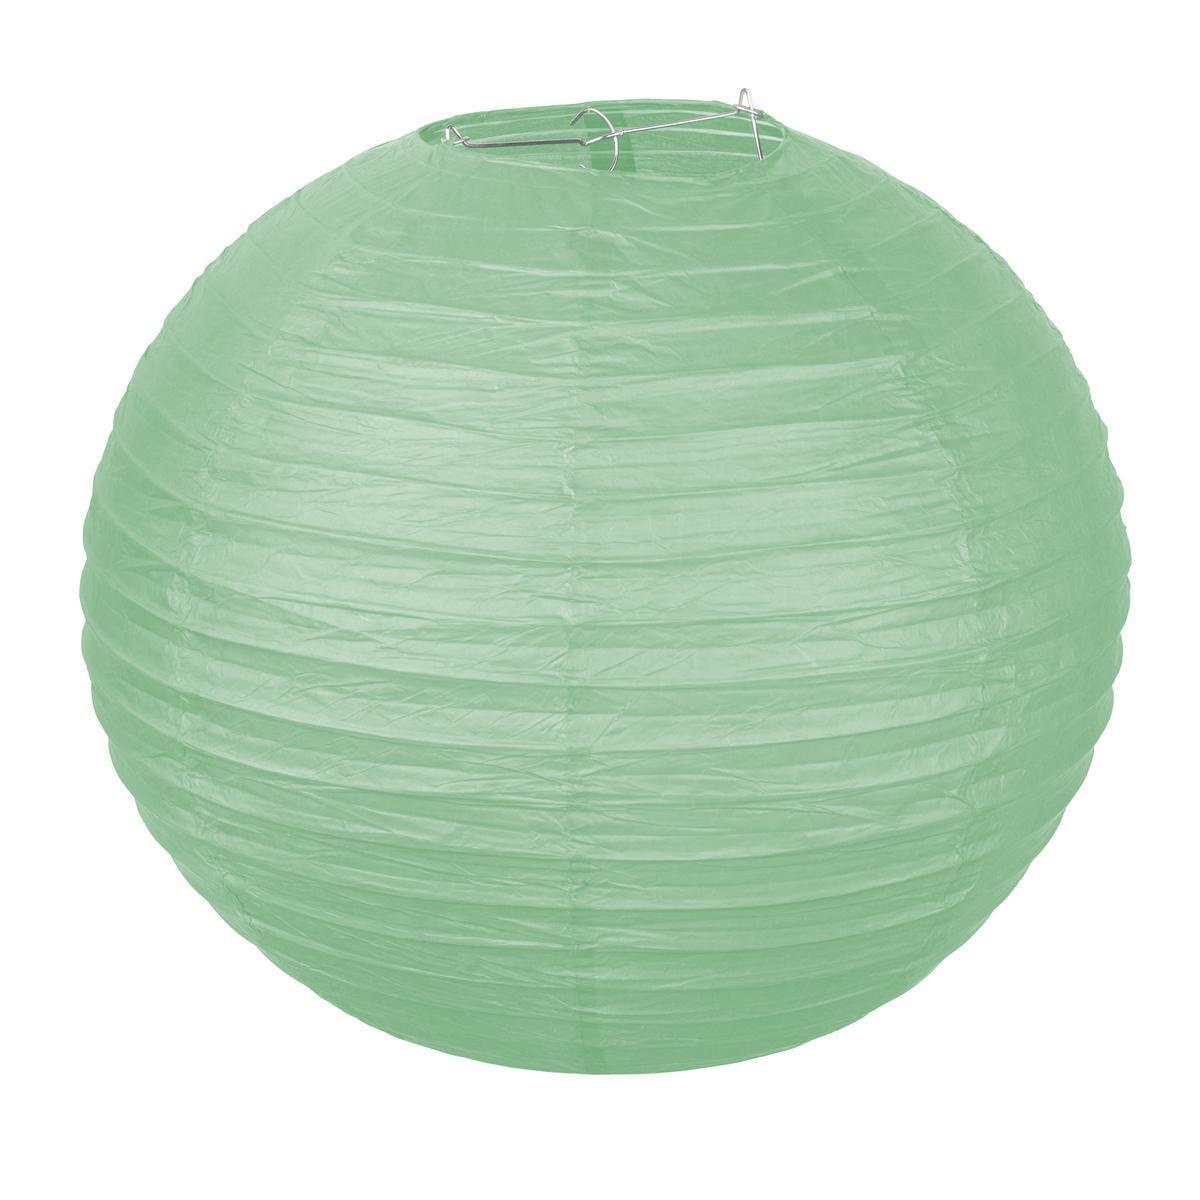 Boule japonaise - ø 60 cm - Vert menthe